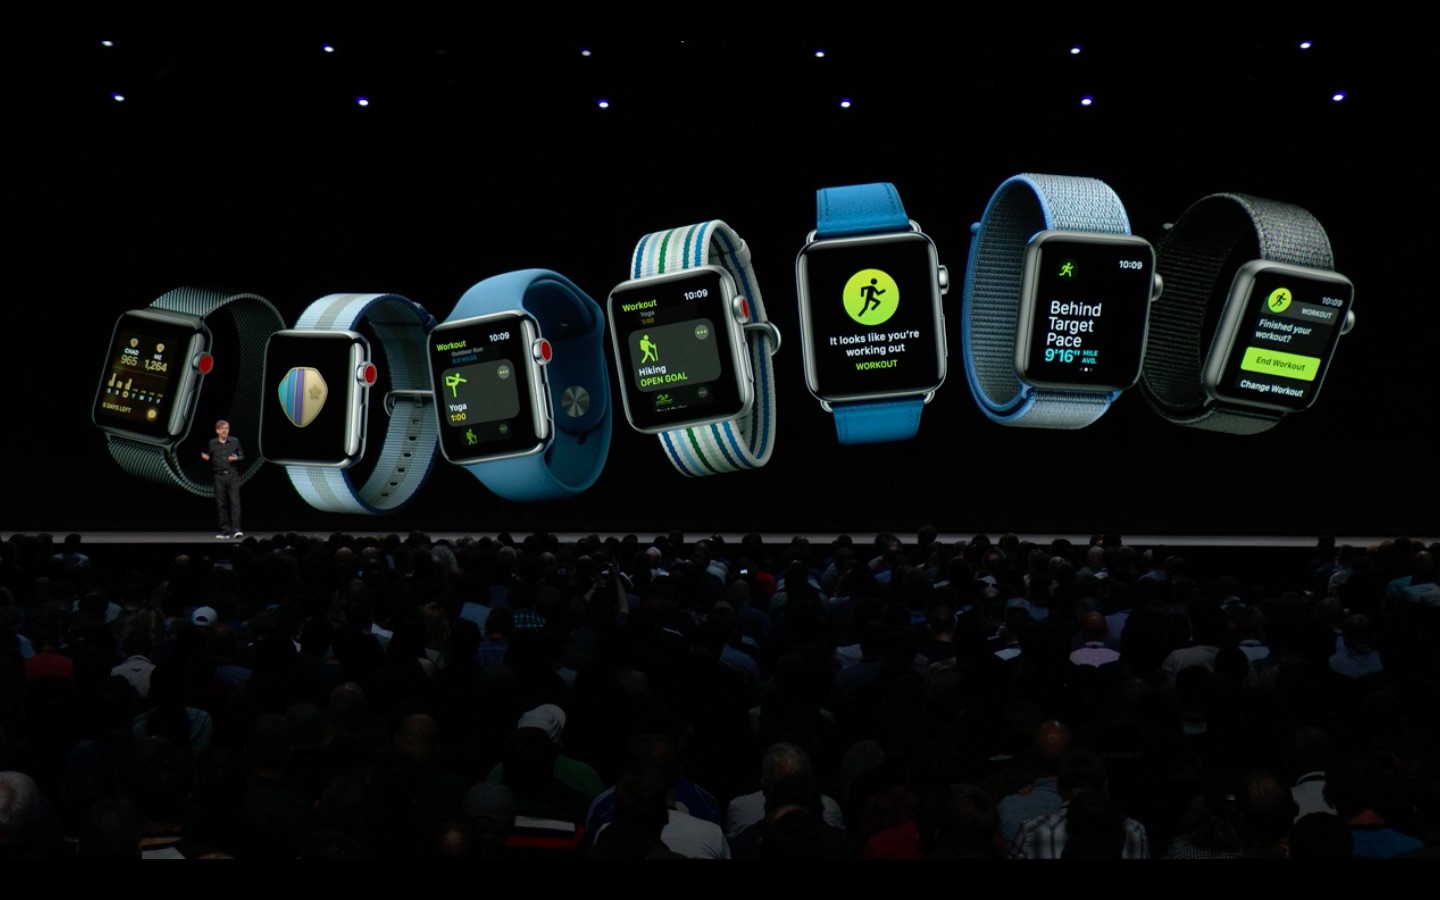 Apple анонсировала watchOS 5